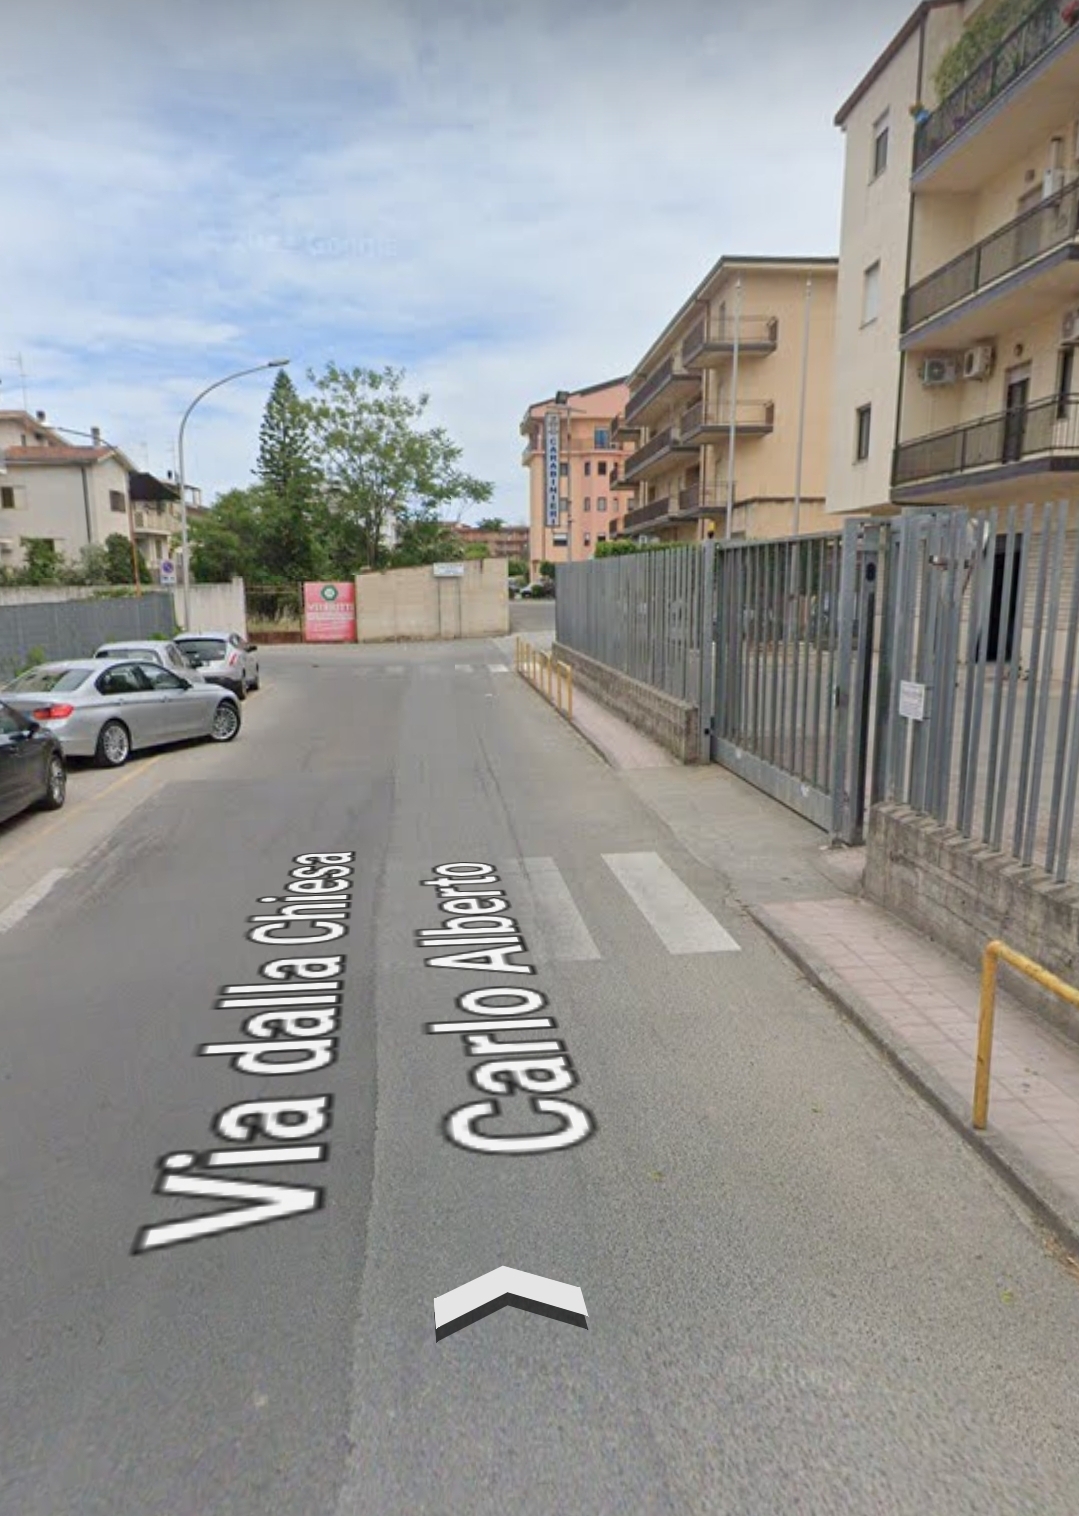 Danneggia Auto Carabinieri: Arrestato a Corigliano Rossano - Cosenza - Calabria